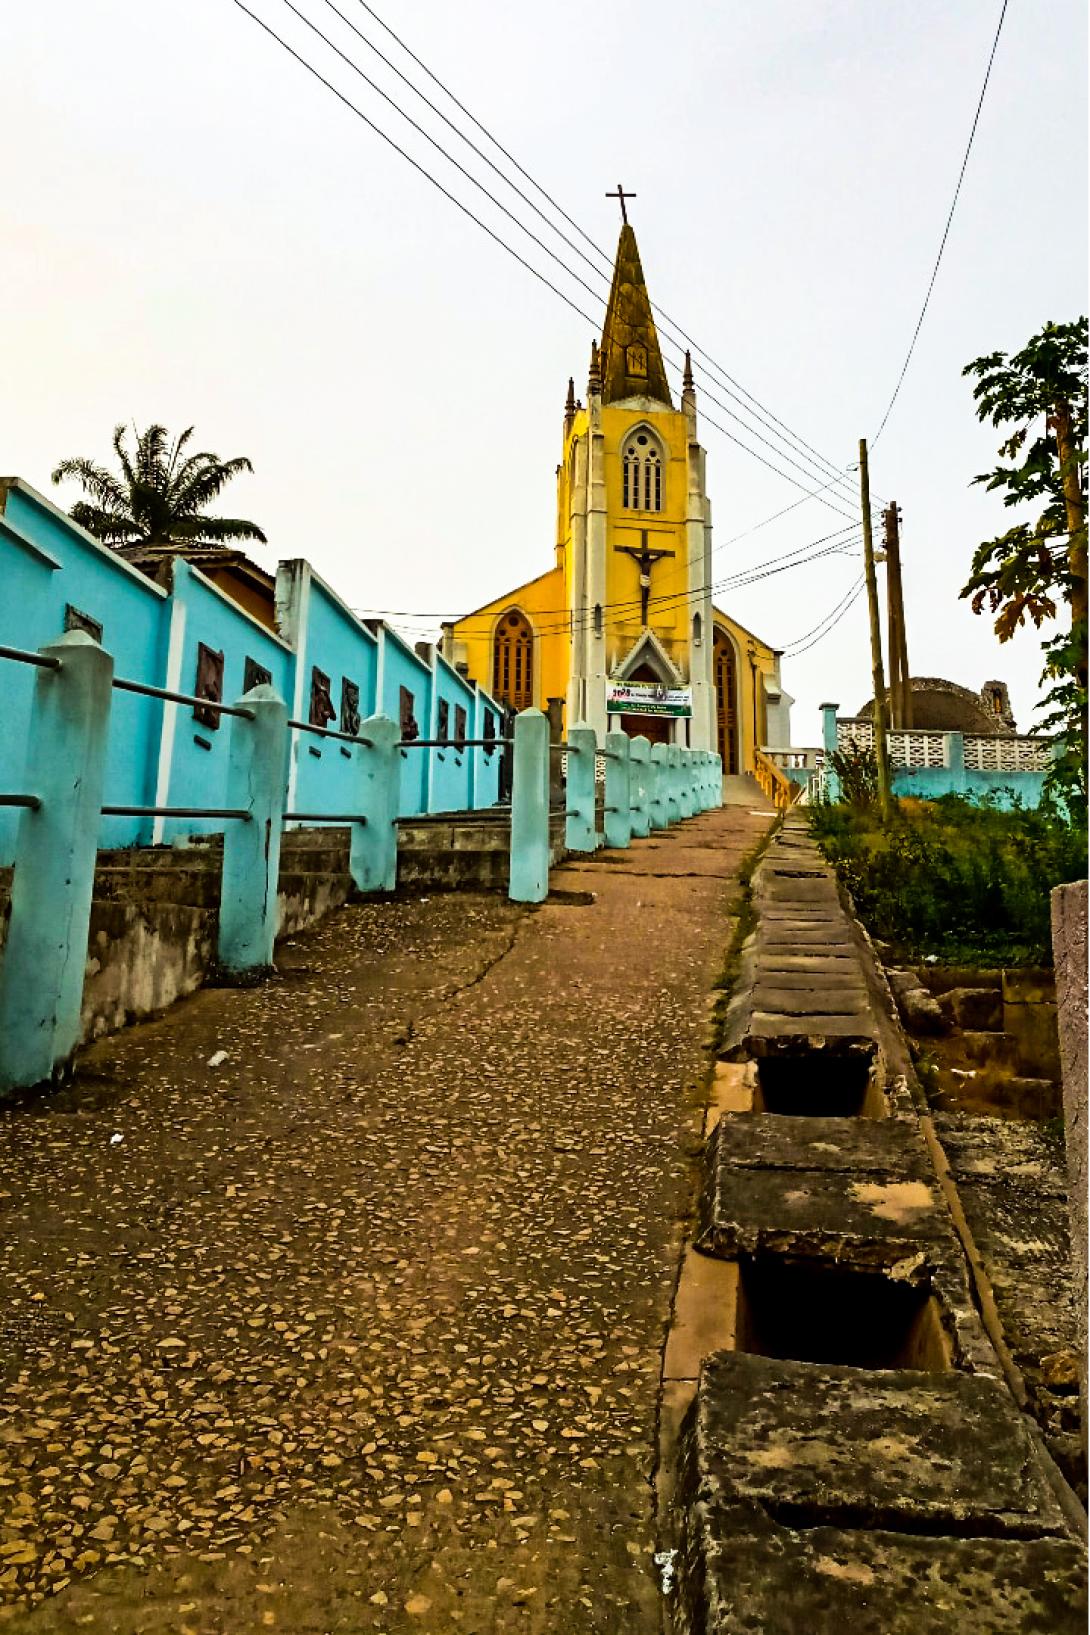 Church on a hill in Cape Coast, Ghana